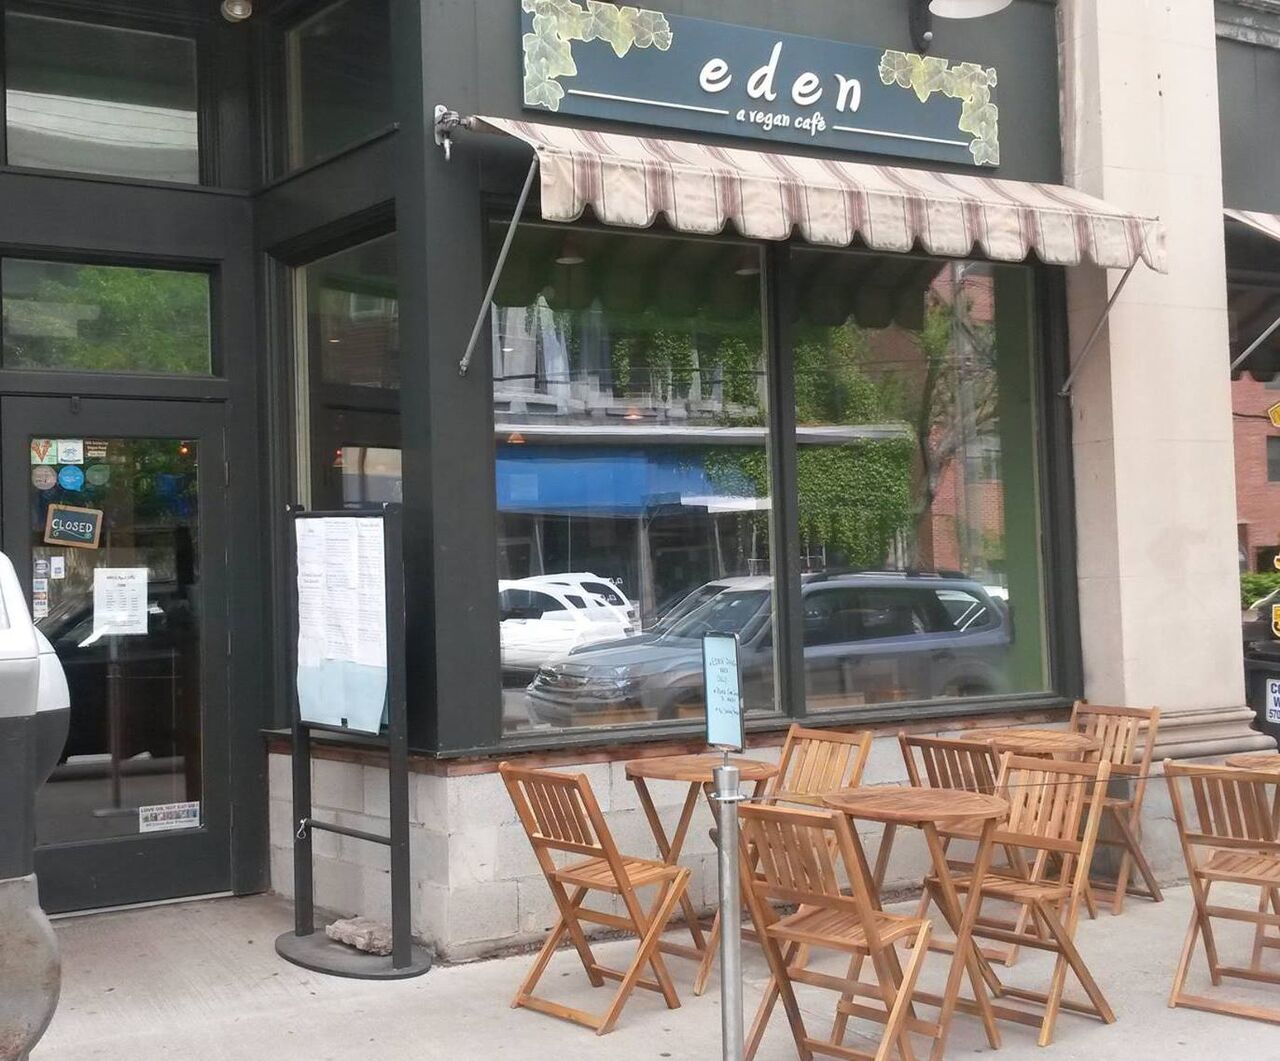 A photo of eden - a vegan café